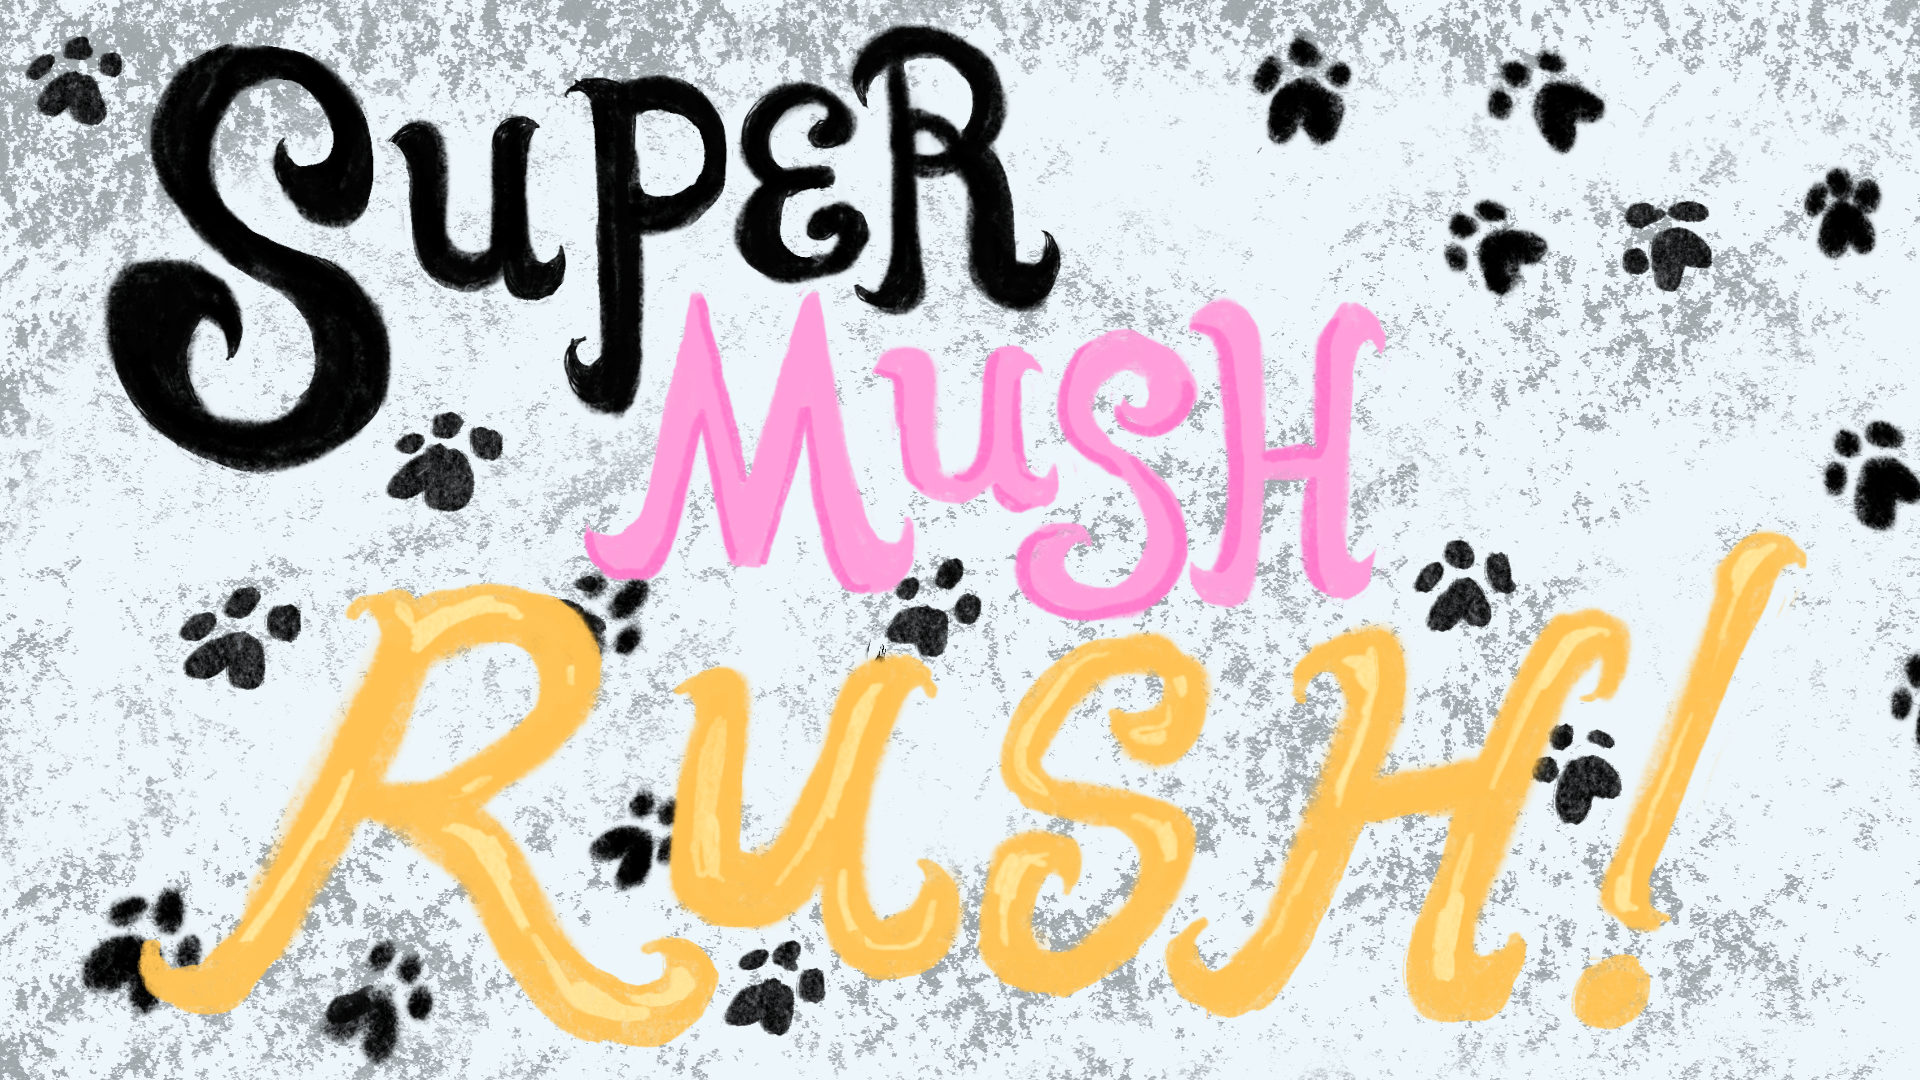 SUPER MUSH RUSH